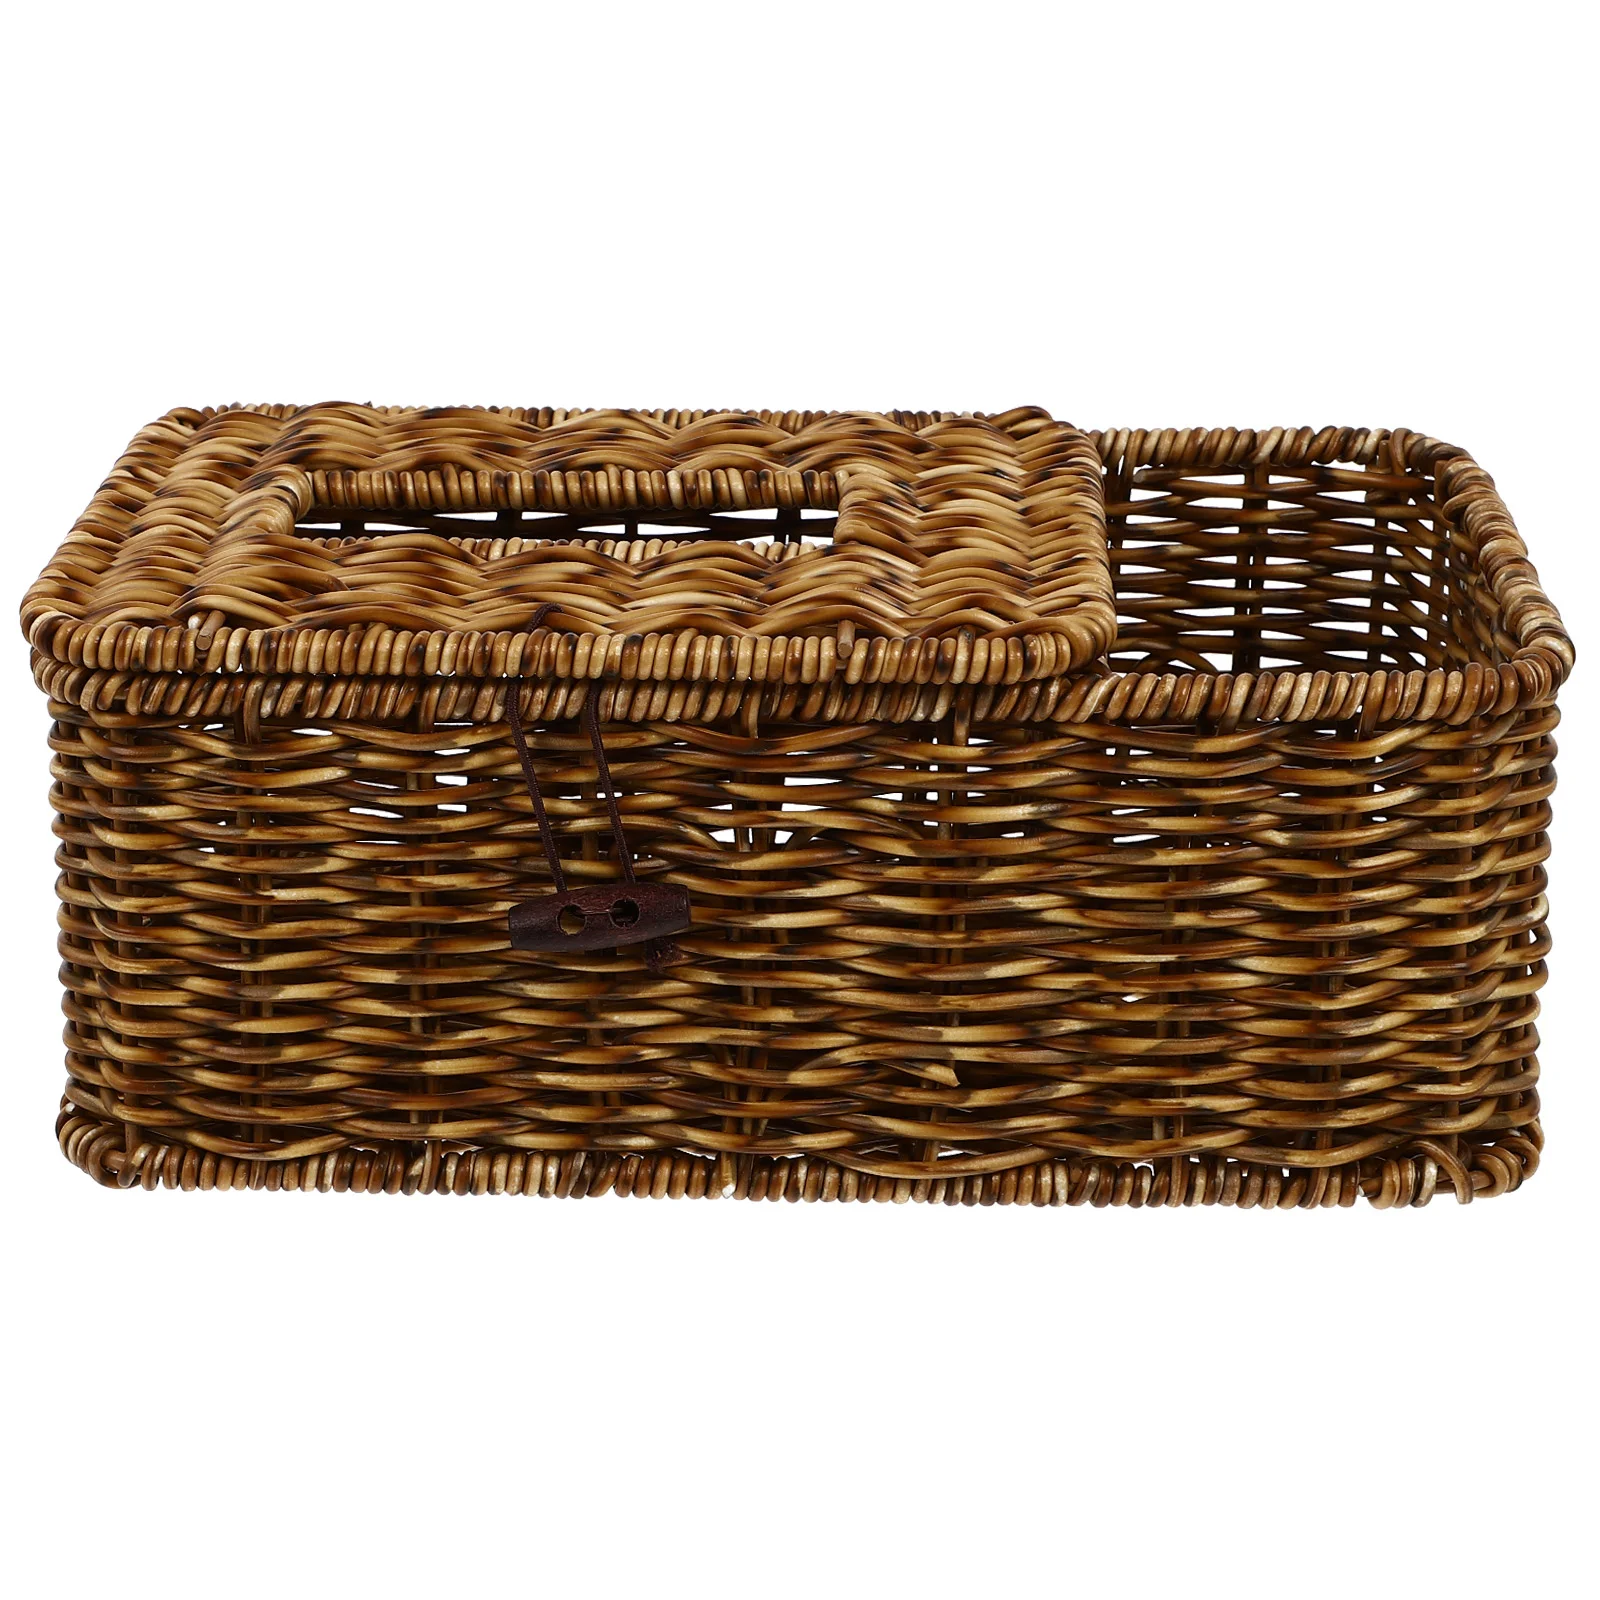 

Box Tissue Holder Napkin Cover Rattan Wicker Woven Paper Storage Basket Home Dispenser Square Facial Case Seagrass Decorative